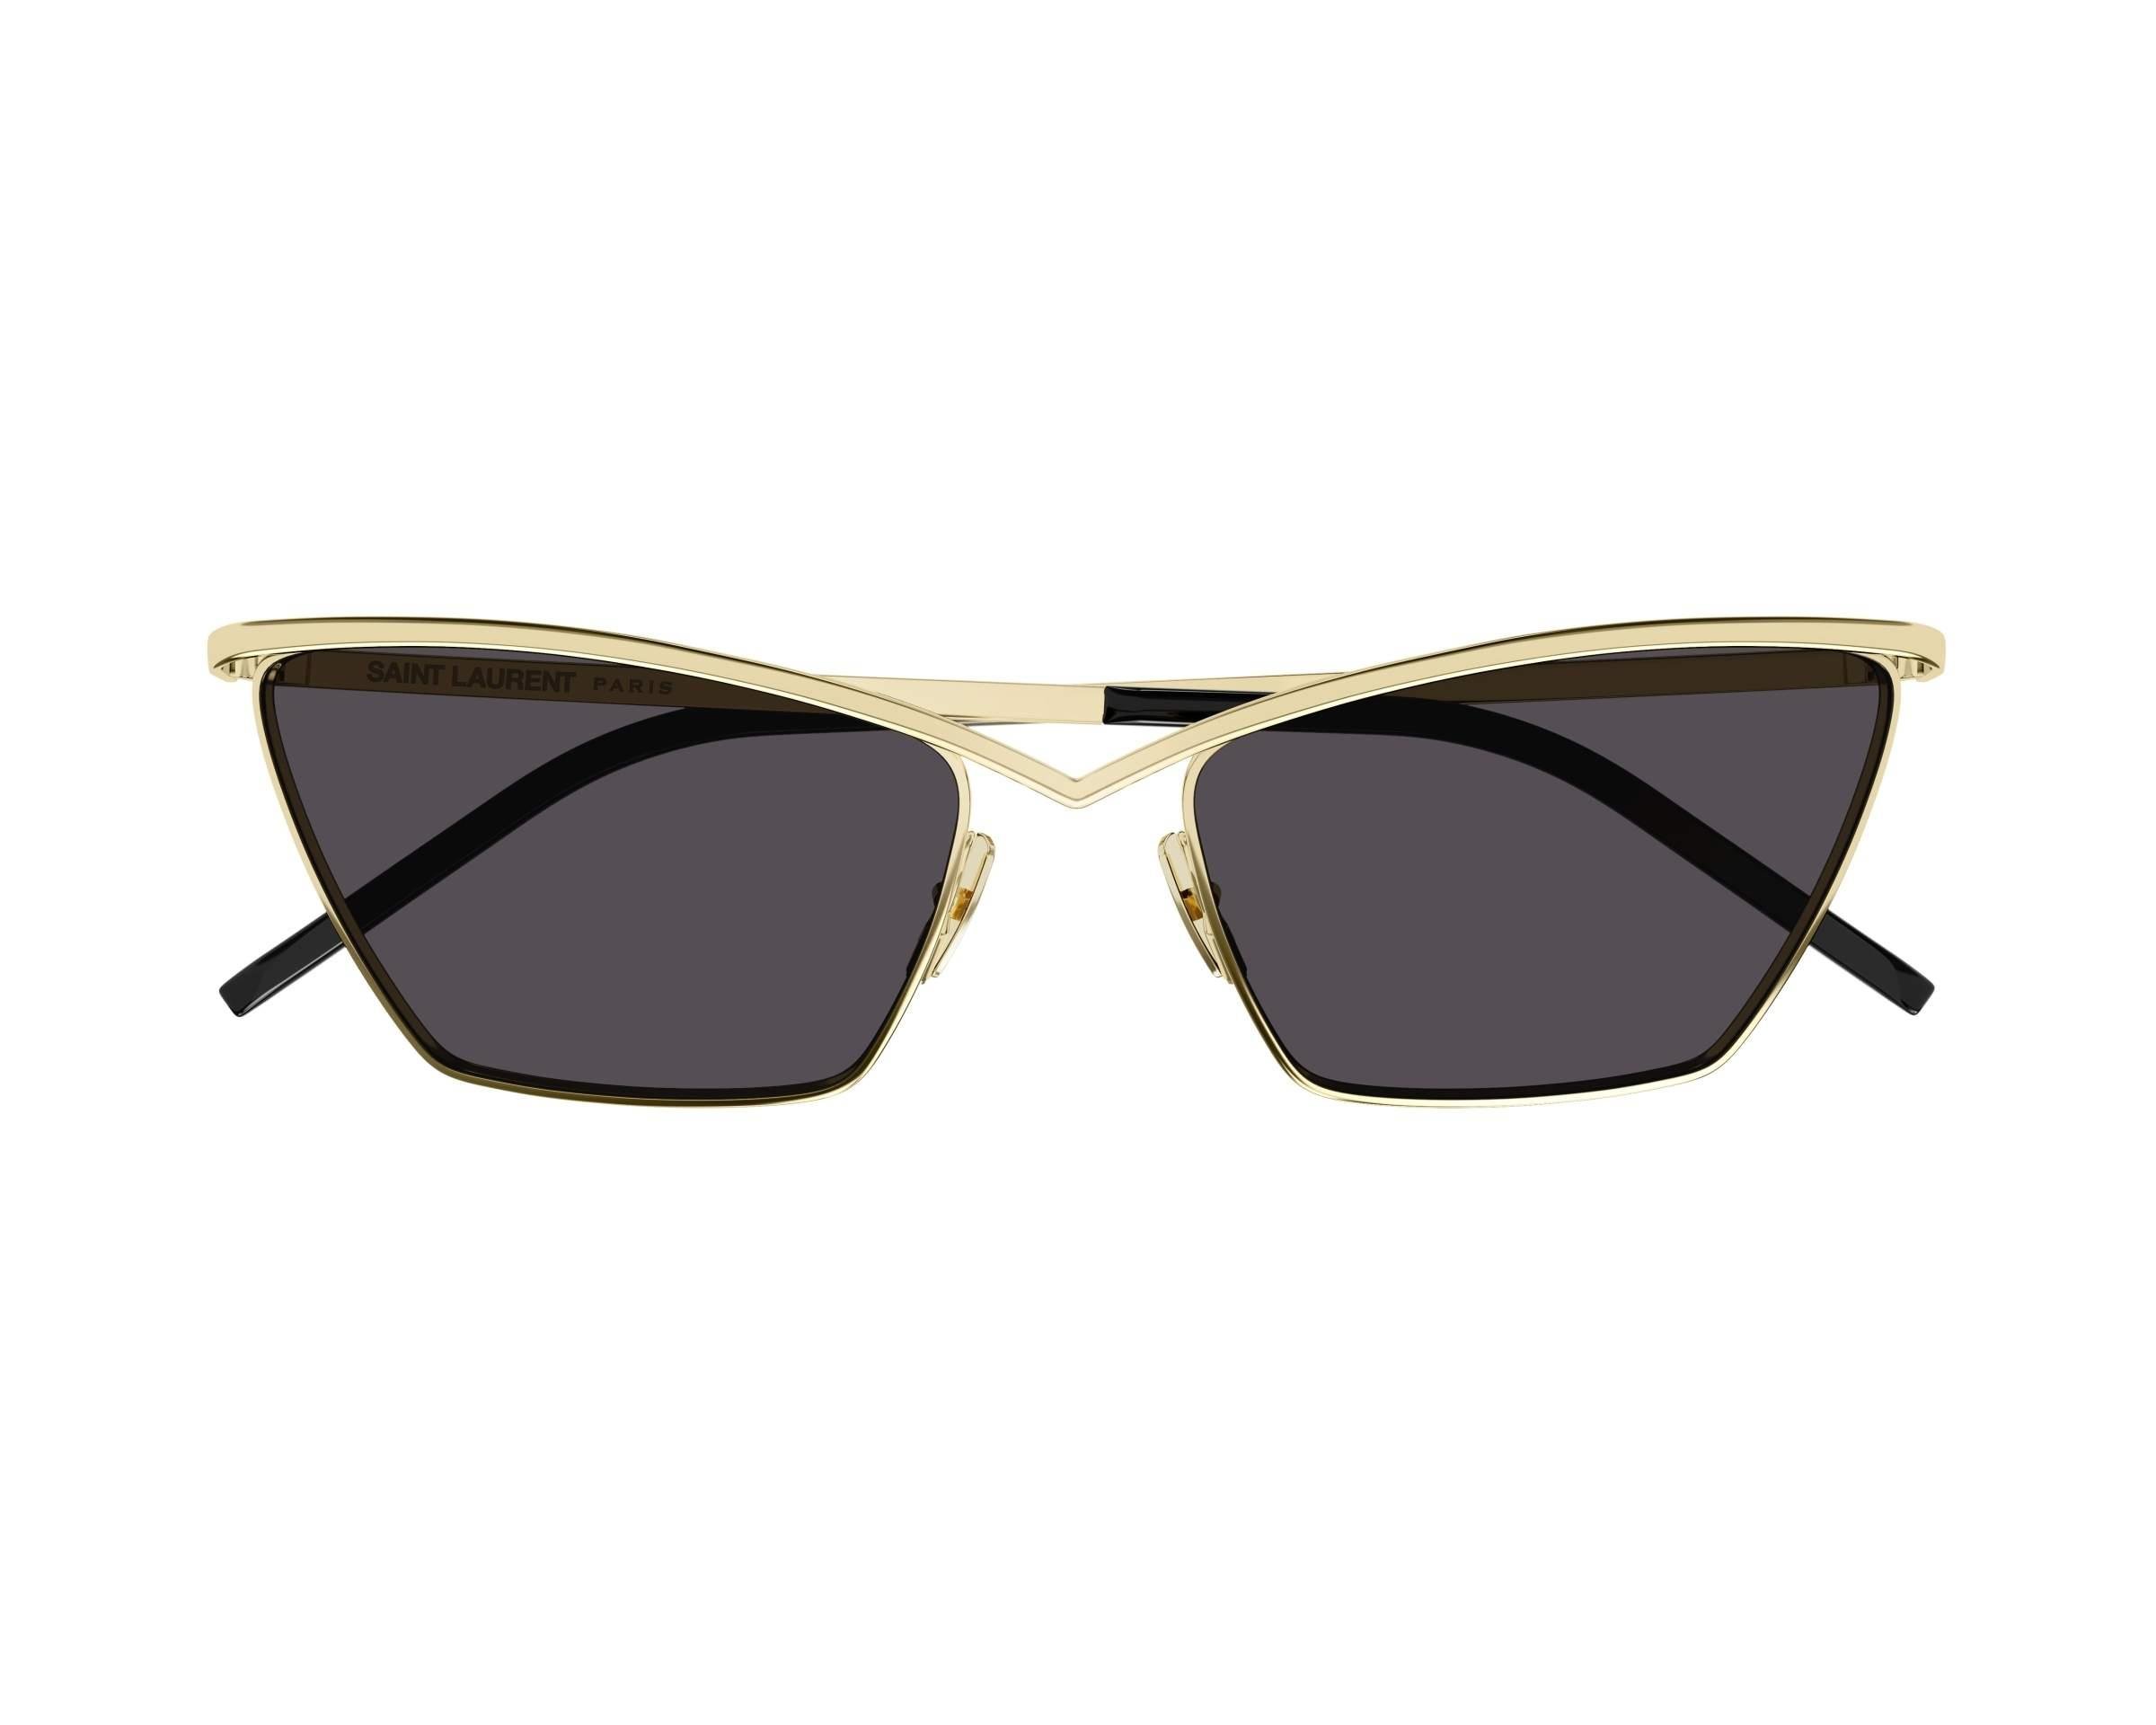 Yves Saint Laurent güneş gözlüğü sl 637 003 57-17 / kadın güneş gözlüğü